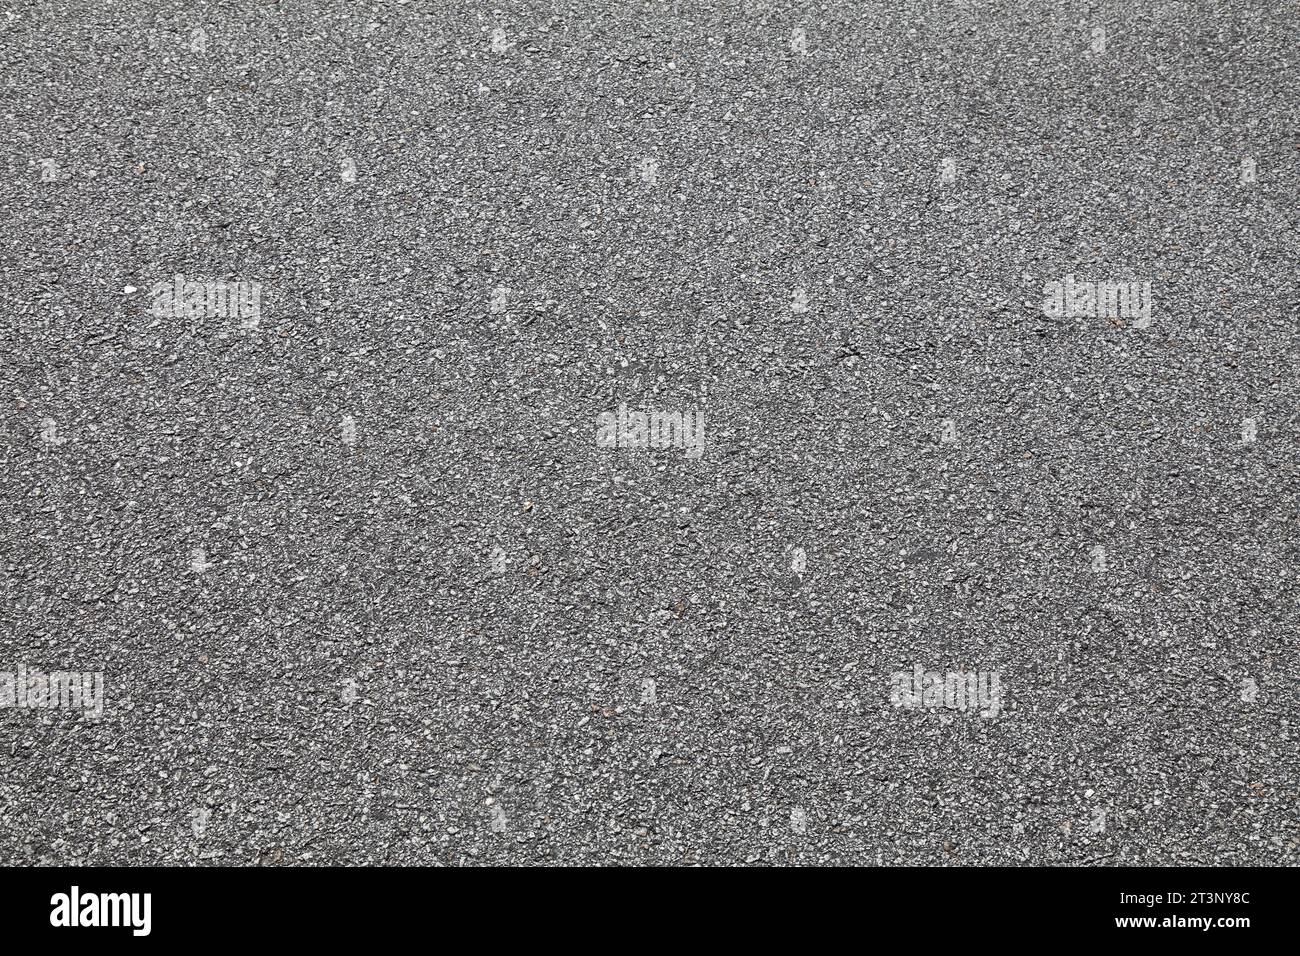 Texture de surface noire de route asphaltée. Vue de dessus de la surface du tarmac en arrière-plan de la route. Banque D'Images